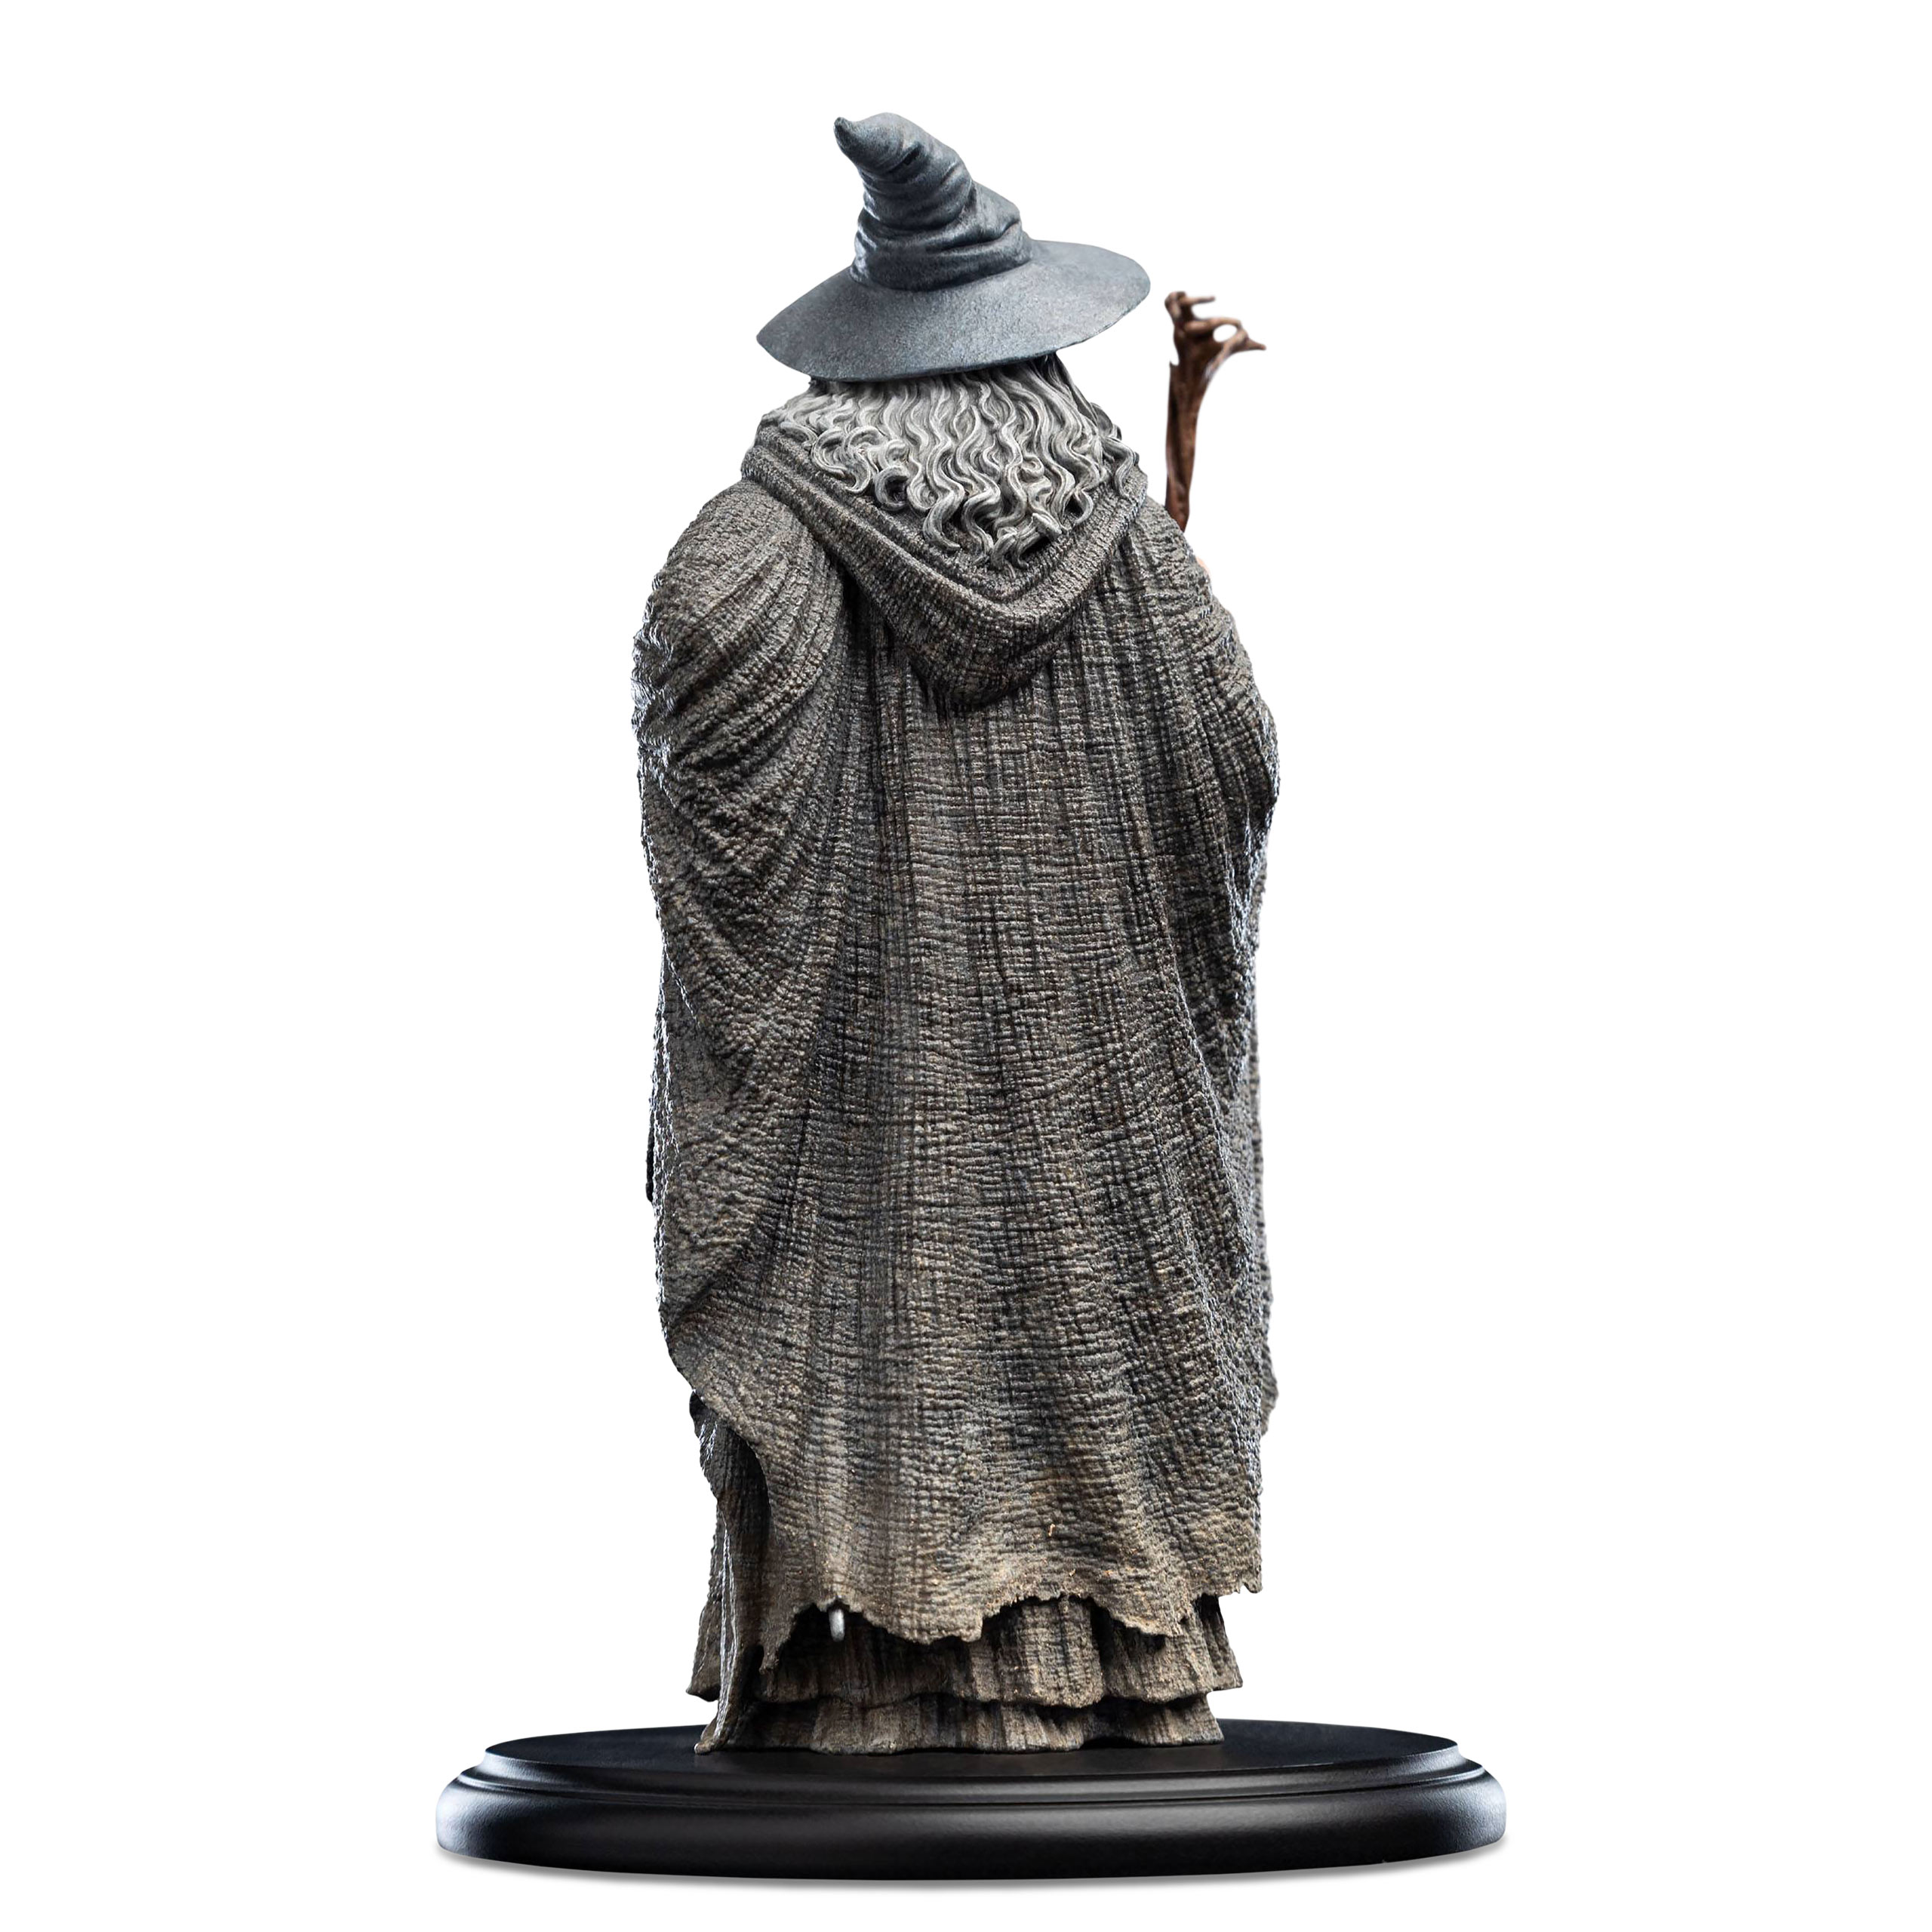 Herr der Ringe - Gandalf der Graue Figur